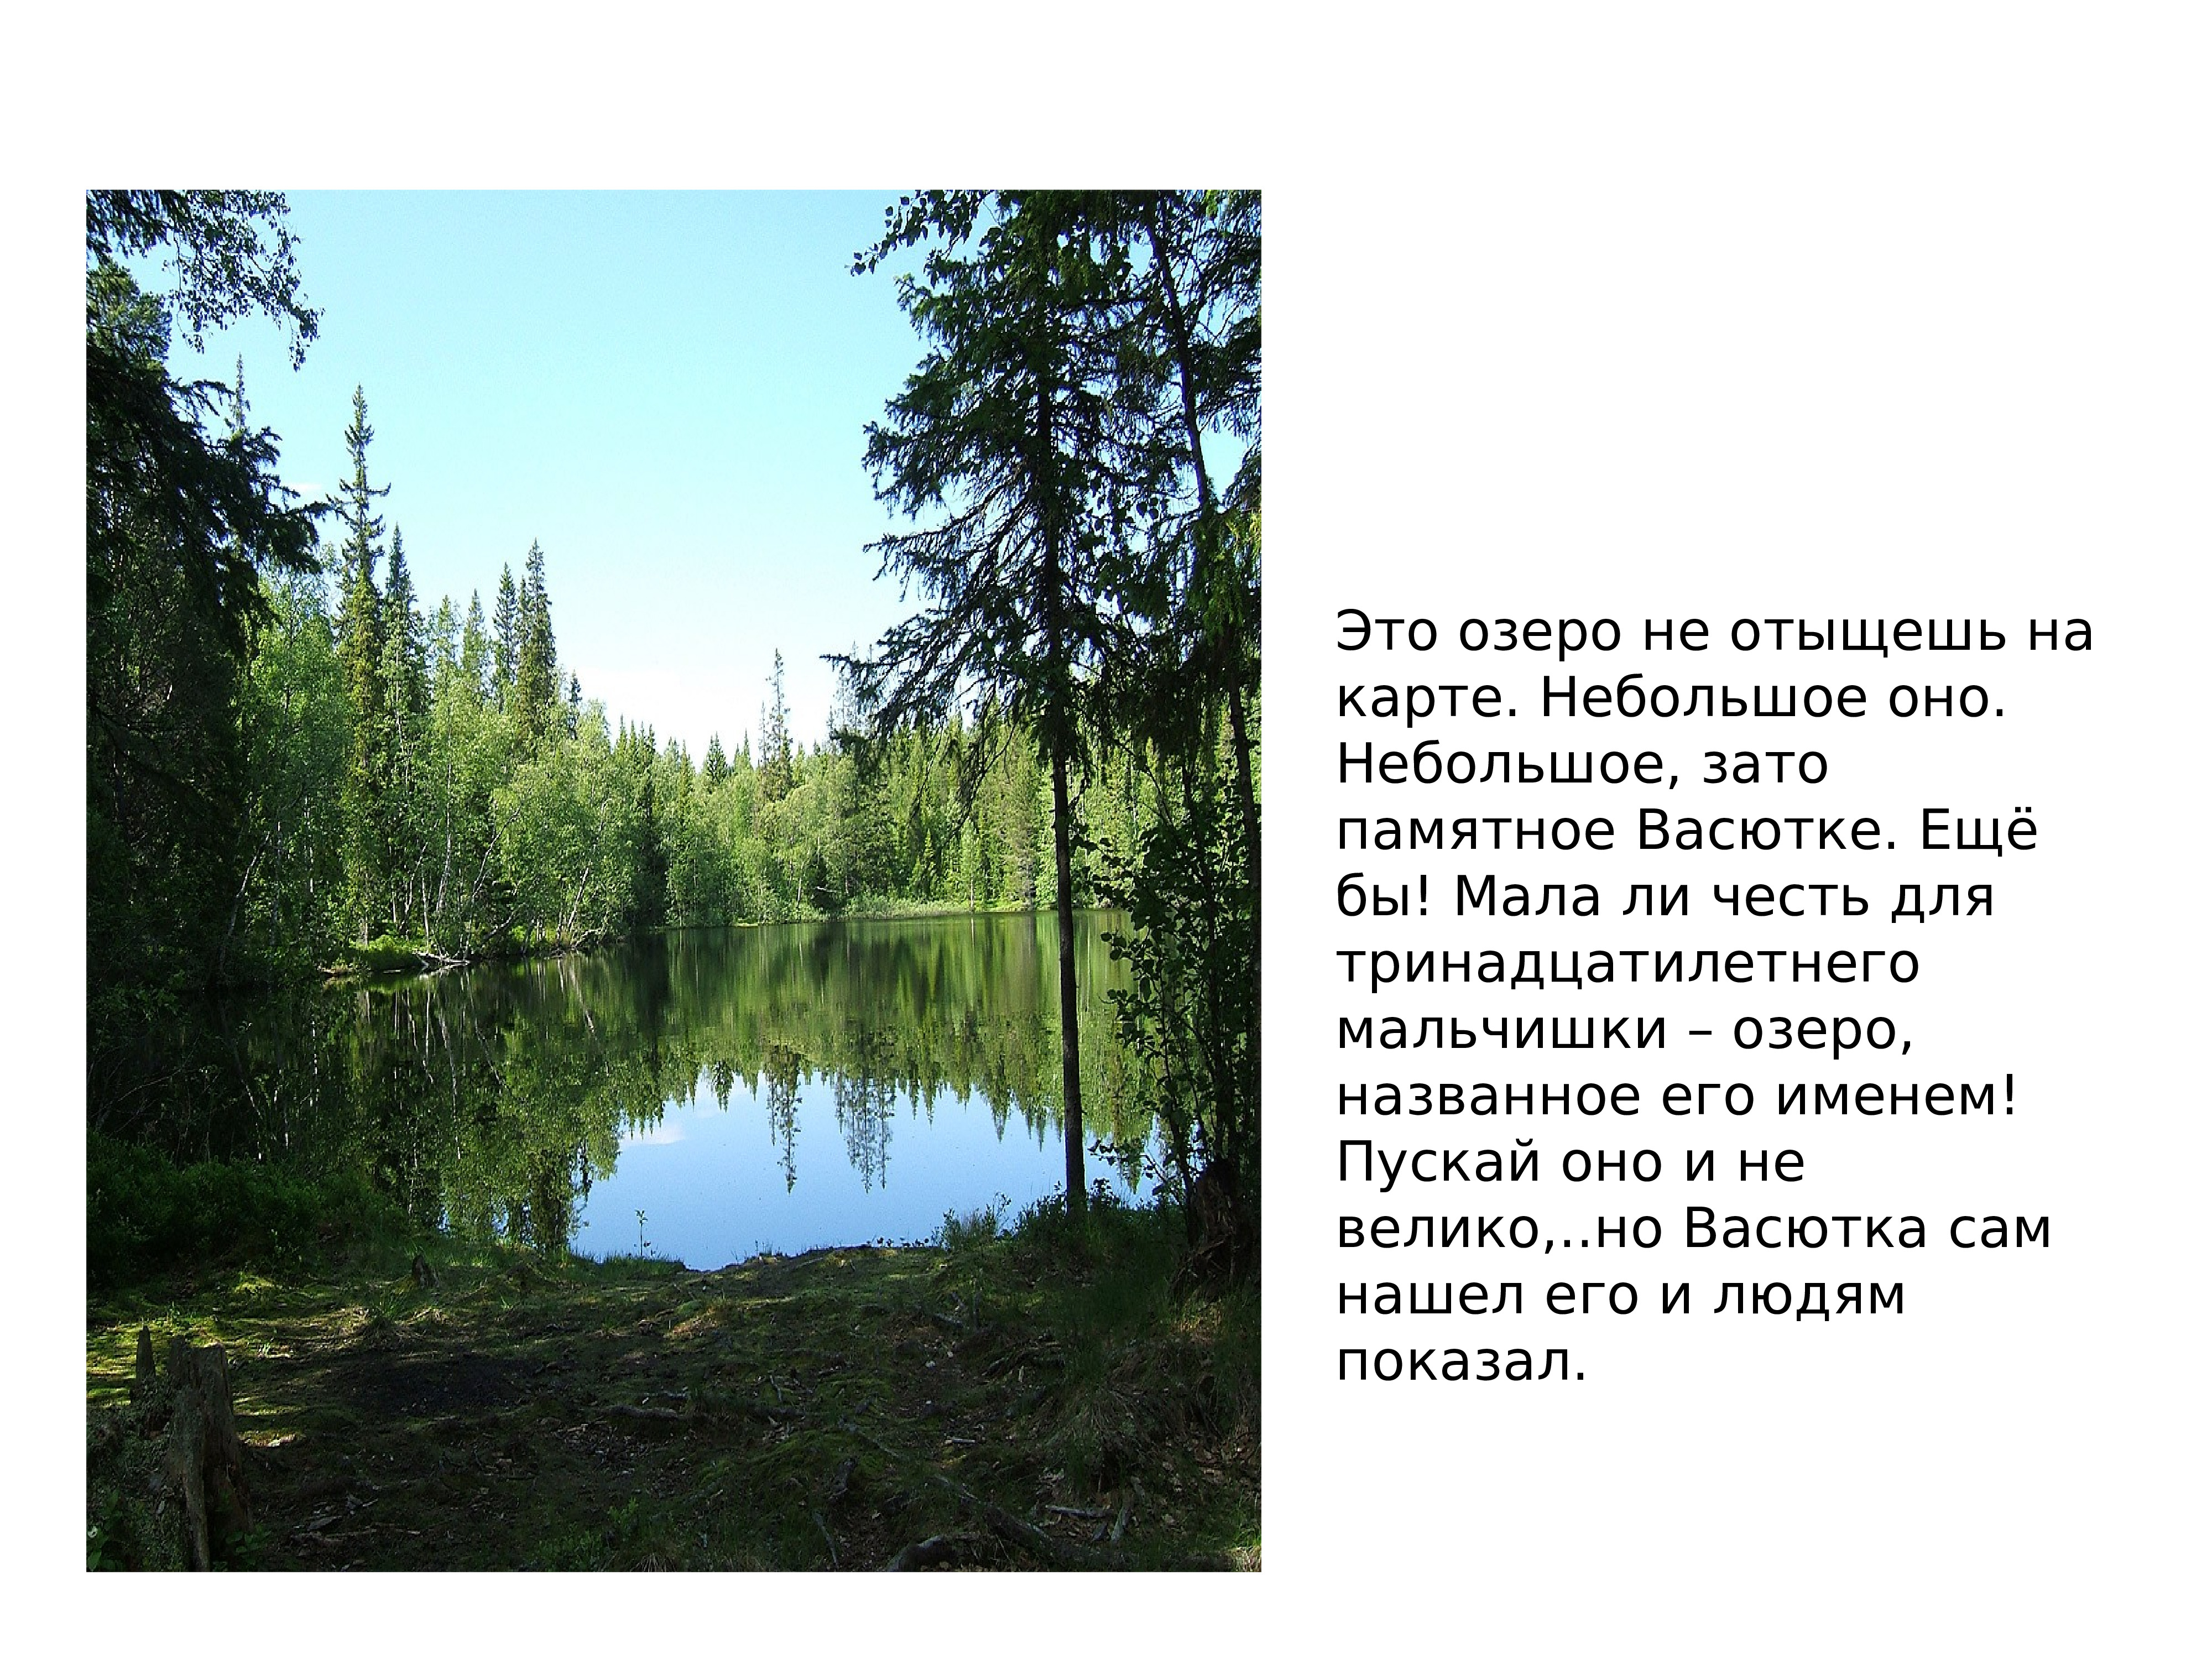 Васюткино озеро реальное озеро. Низовья Енисея Васюткино озеро. Васюткино озеро Астафьев Тайга. Васюткино озеро Красноярский край. Васюткино озеро озеро карта.